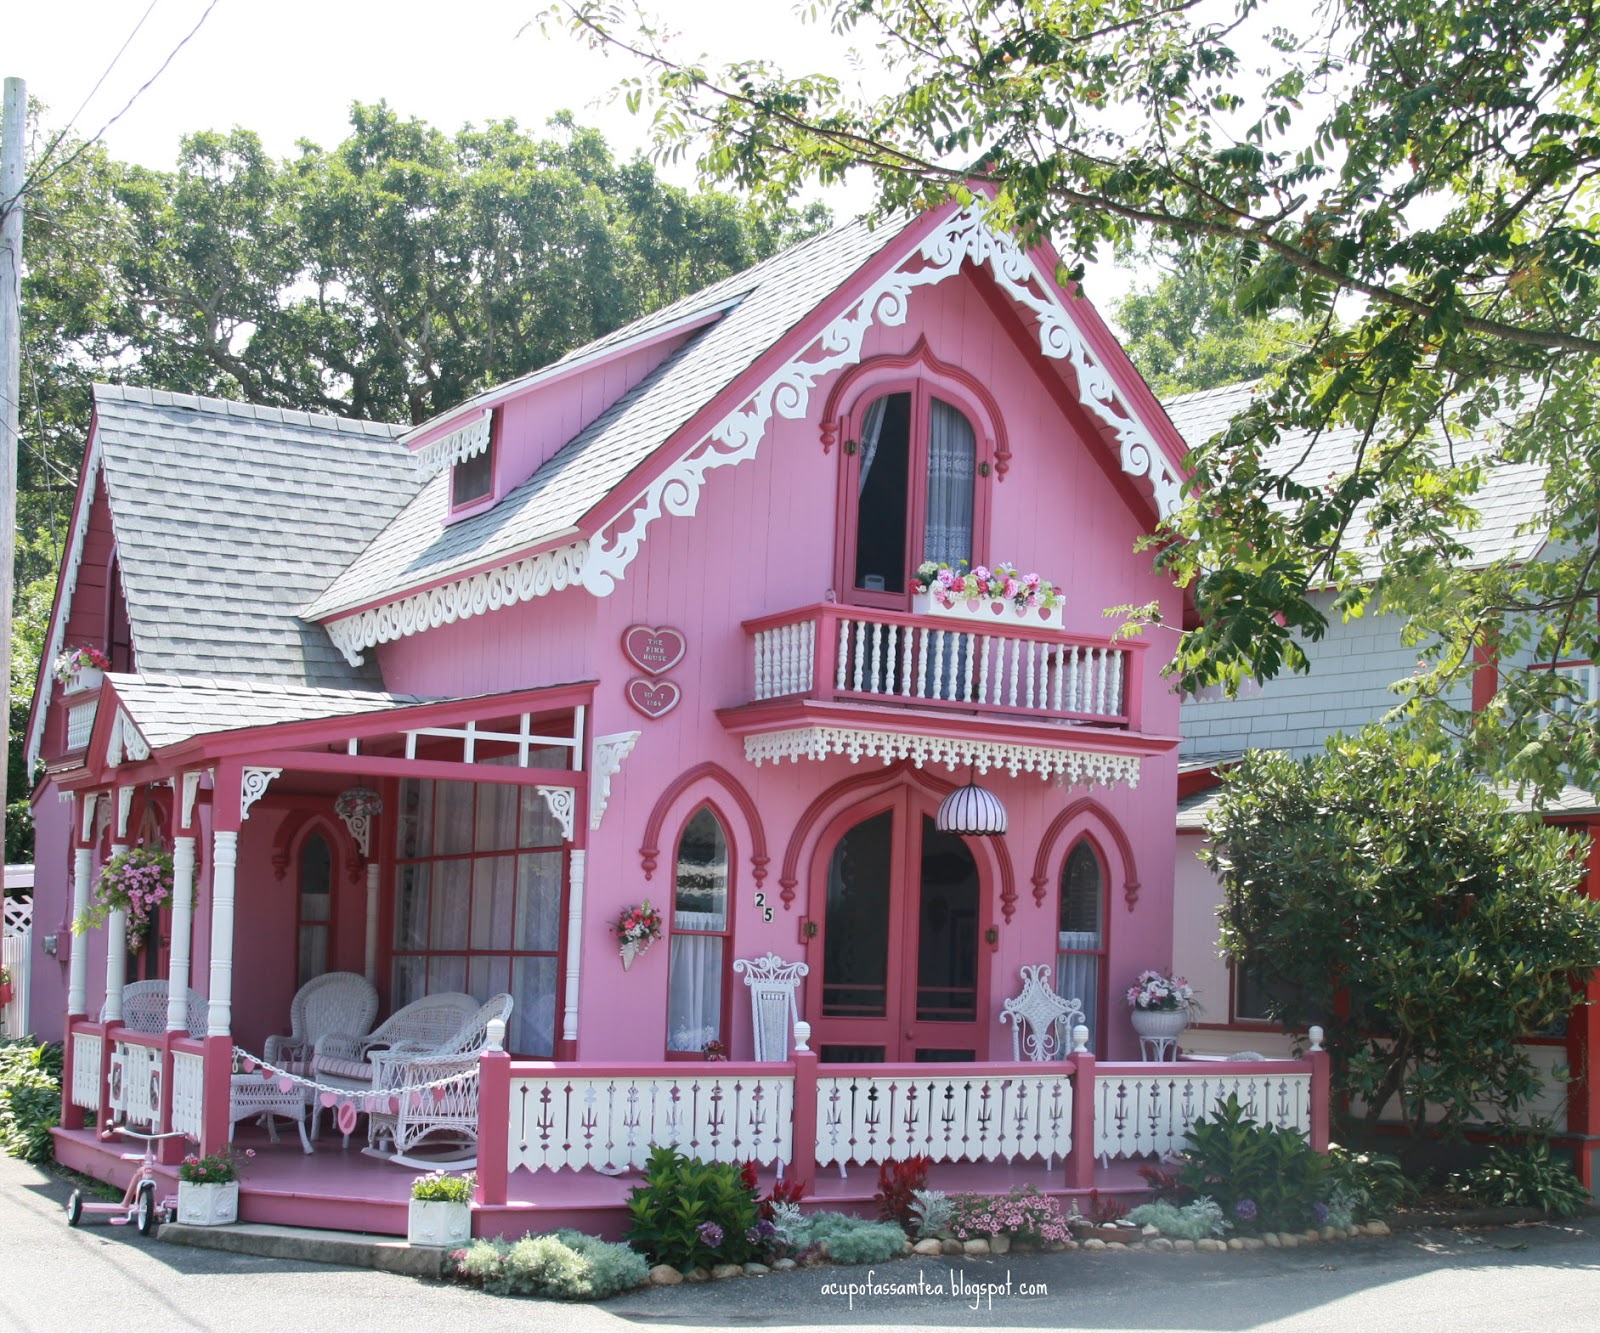 Фото розового дома. Розовый дом. Розовый домик. Красивый розовый дом. Домик розового цвета.